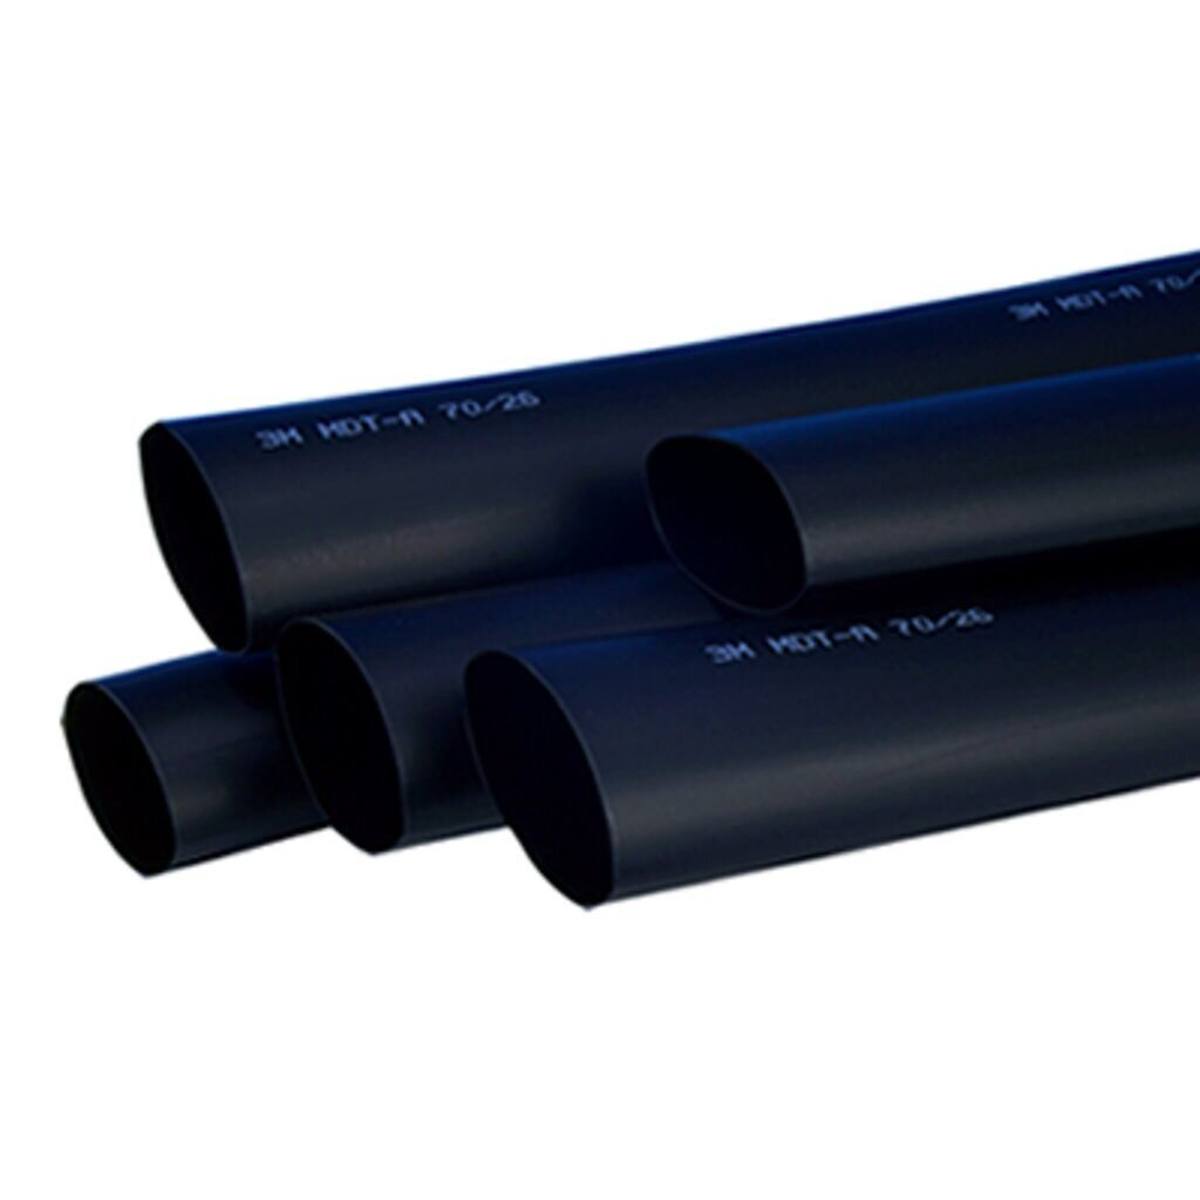 3M MDT-A Tubo termorretráctil de pared media con adhesivo, negro, 70/26 mm, 1 m